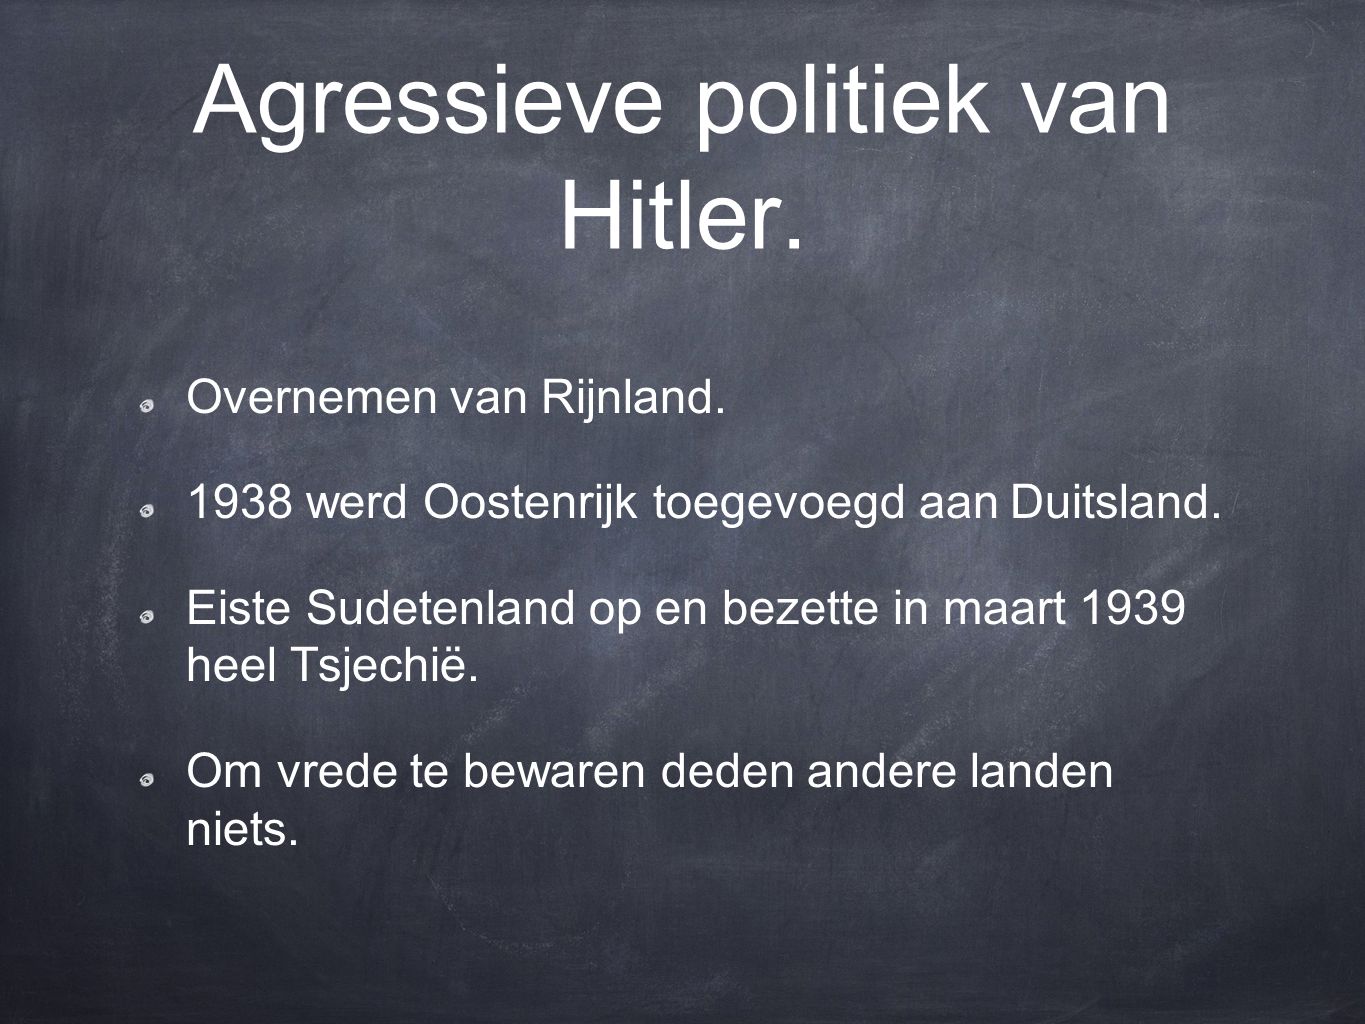 Agressieve politiek van Hitler.